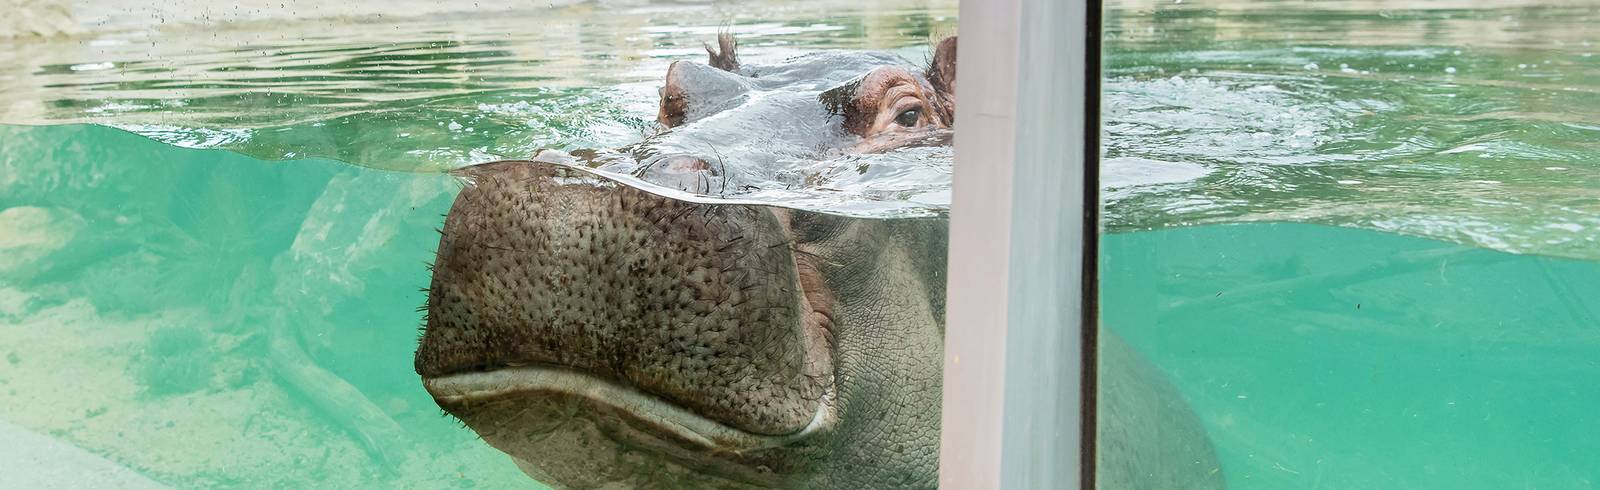 Neuer Badespaß für Flusspferde